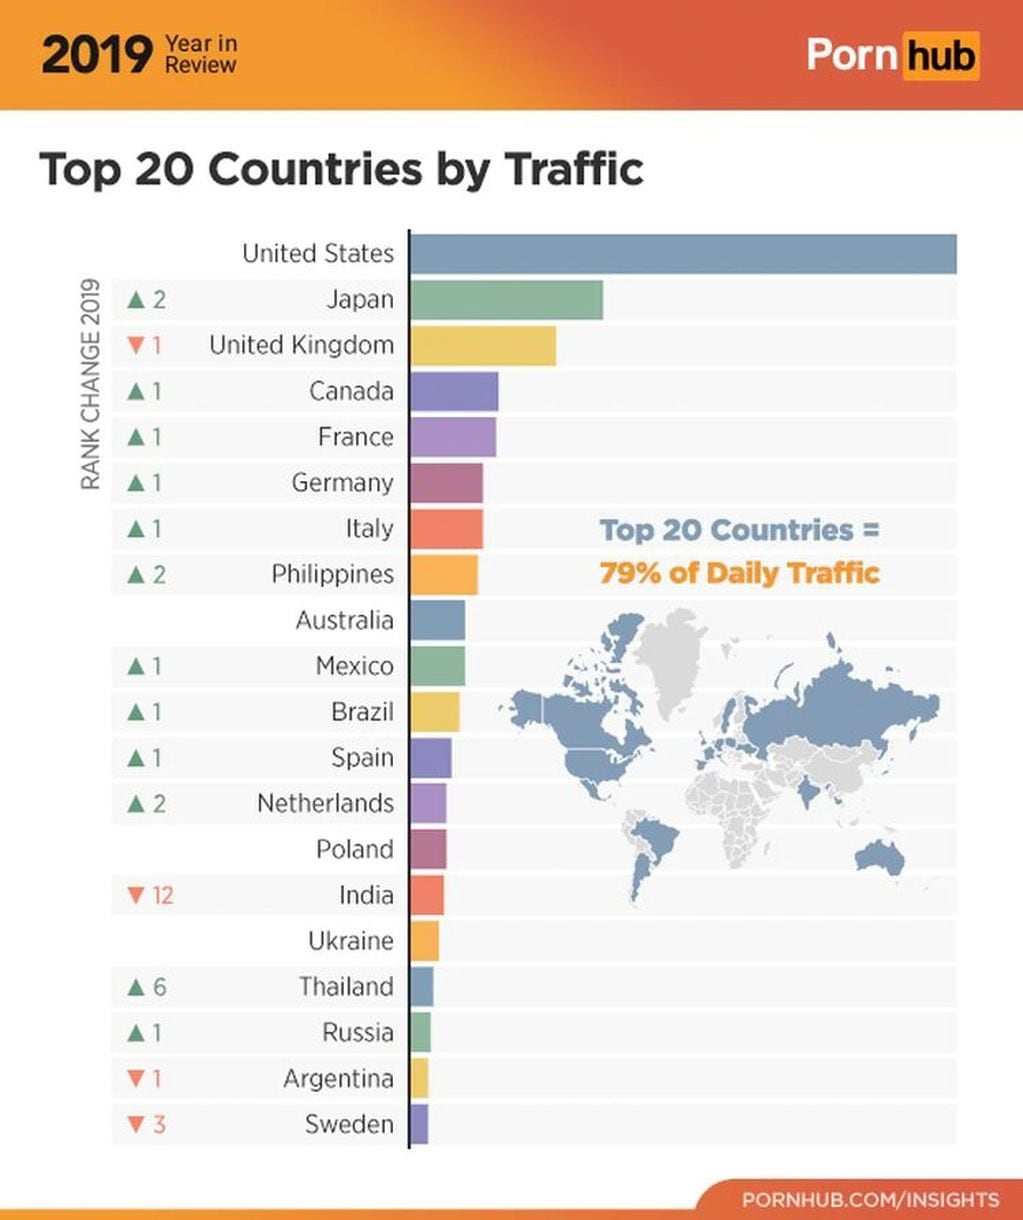 El ranking de países que más porno consumieron en PornHub.